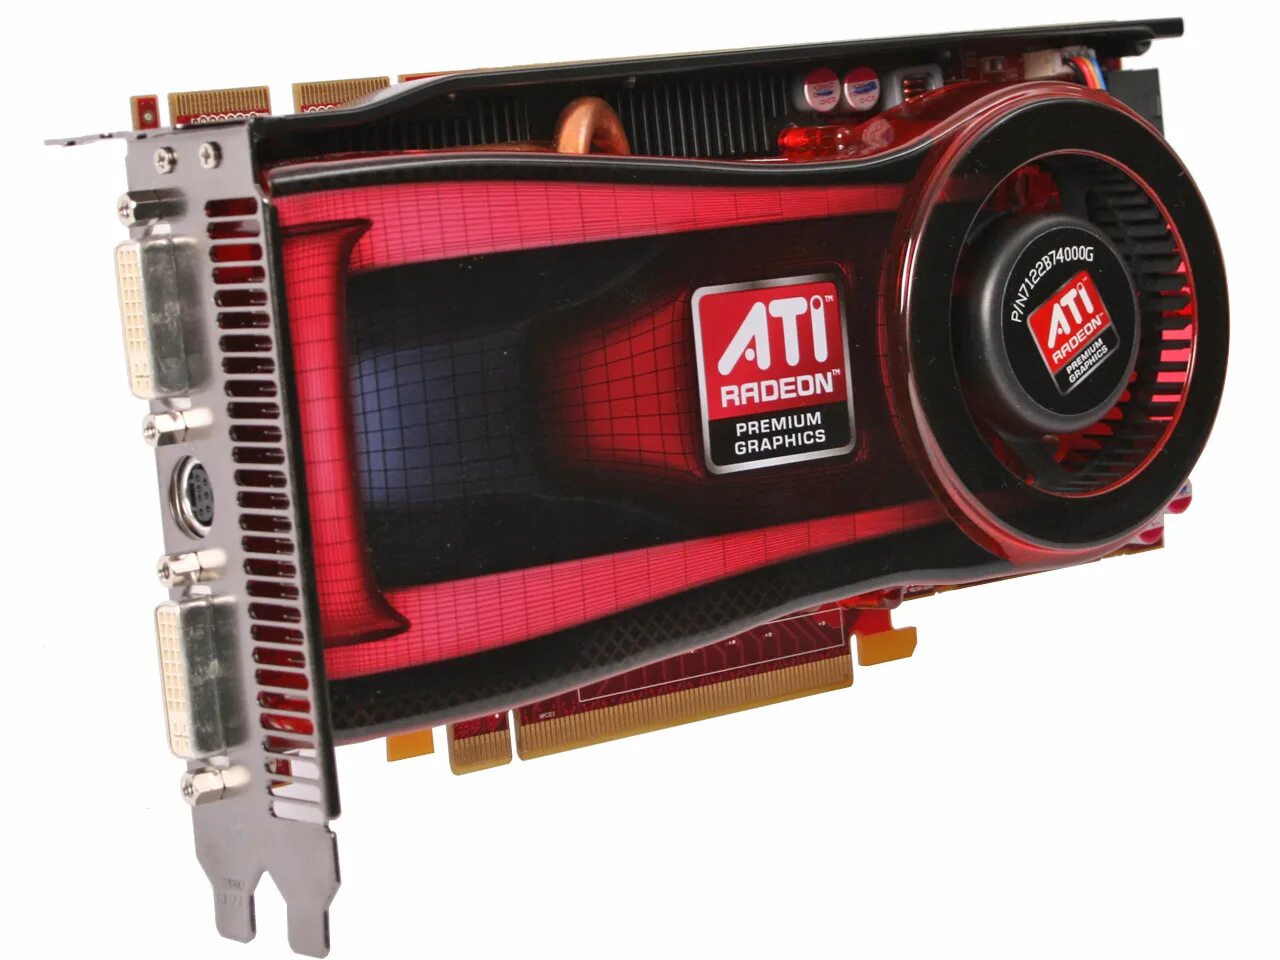 1 ati radeon. AMD ATI Radeon.